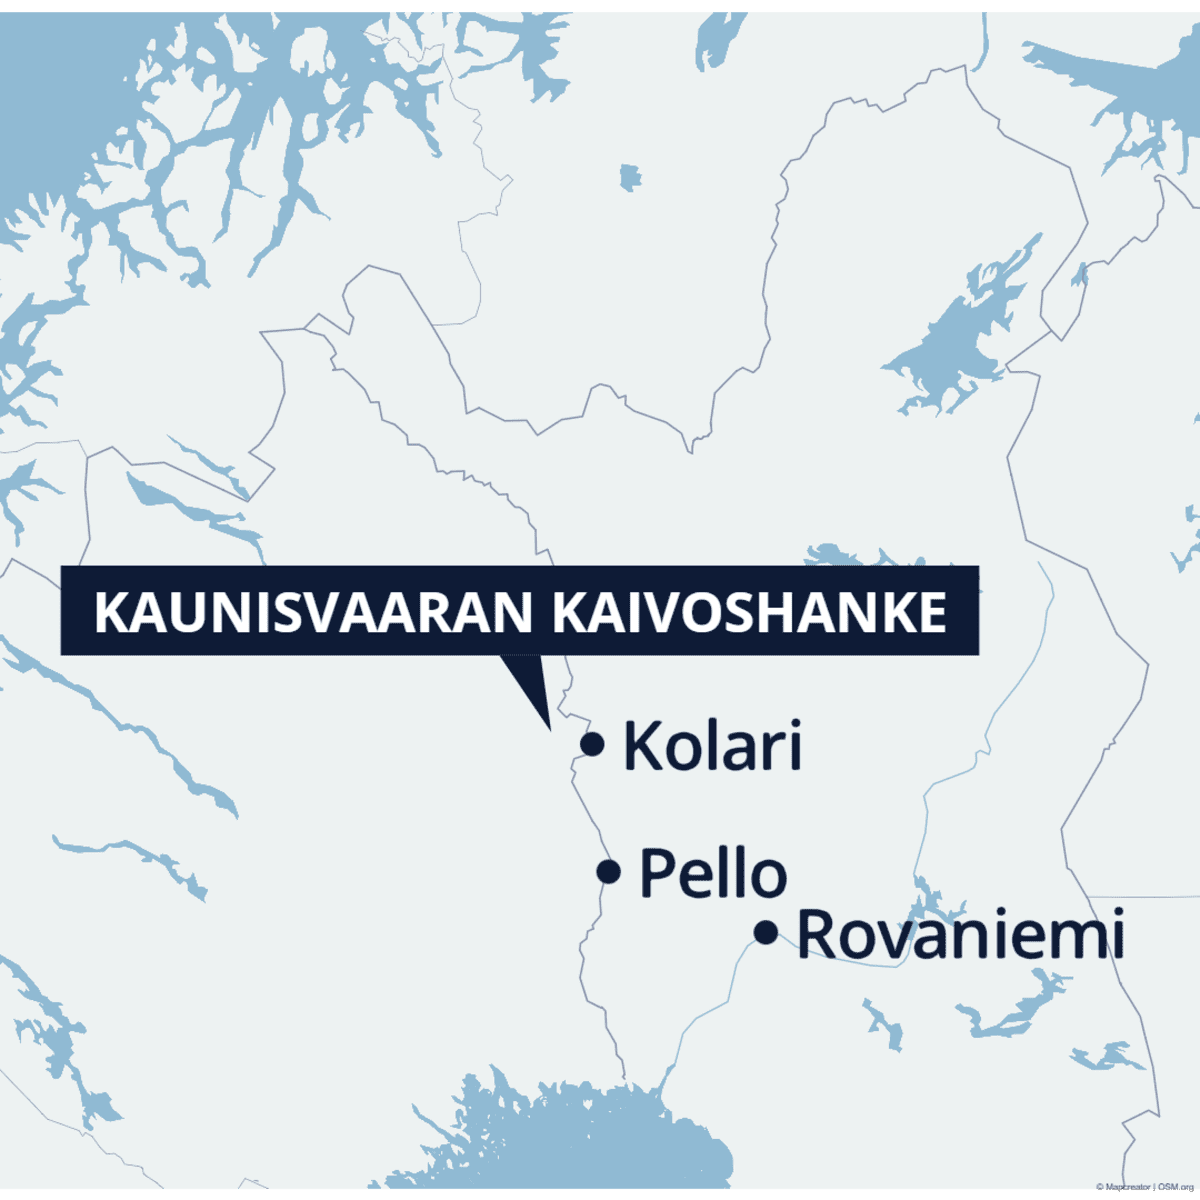 Kartasta näkee, että kaivos on lähellä Suomen länsirajaa noin Kolarin korkeudella.